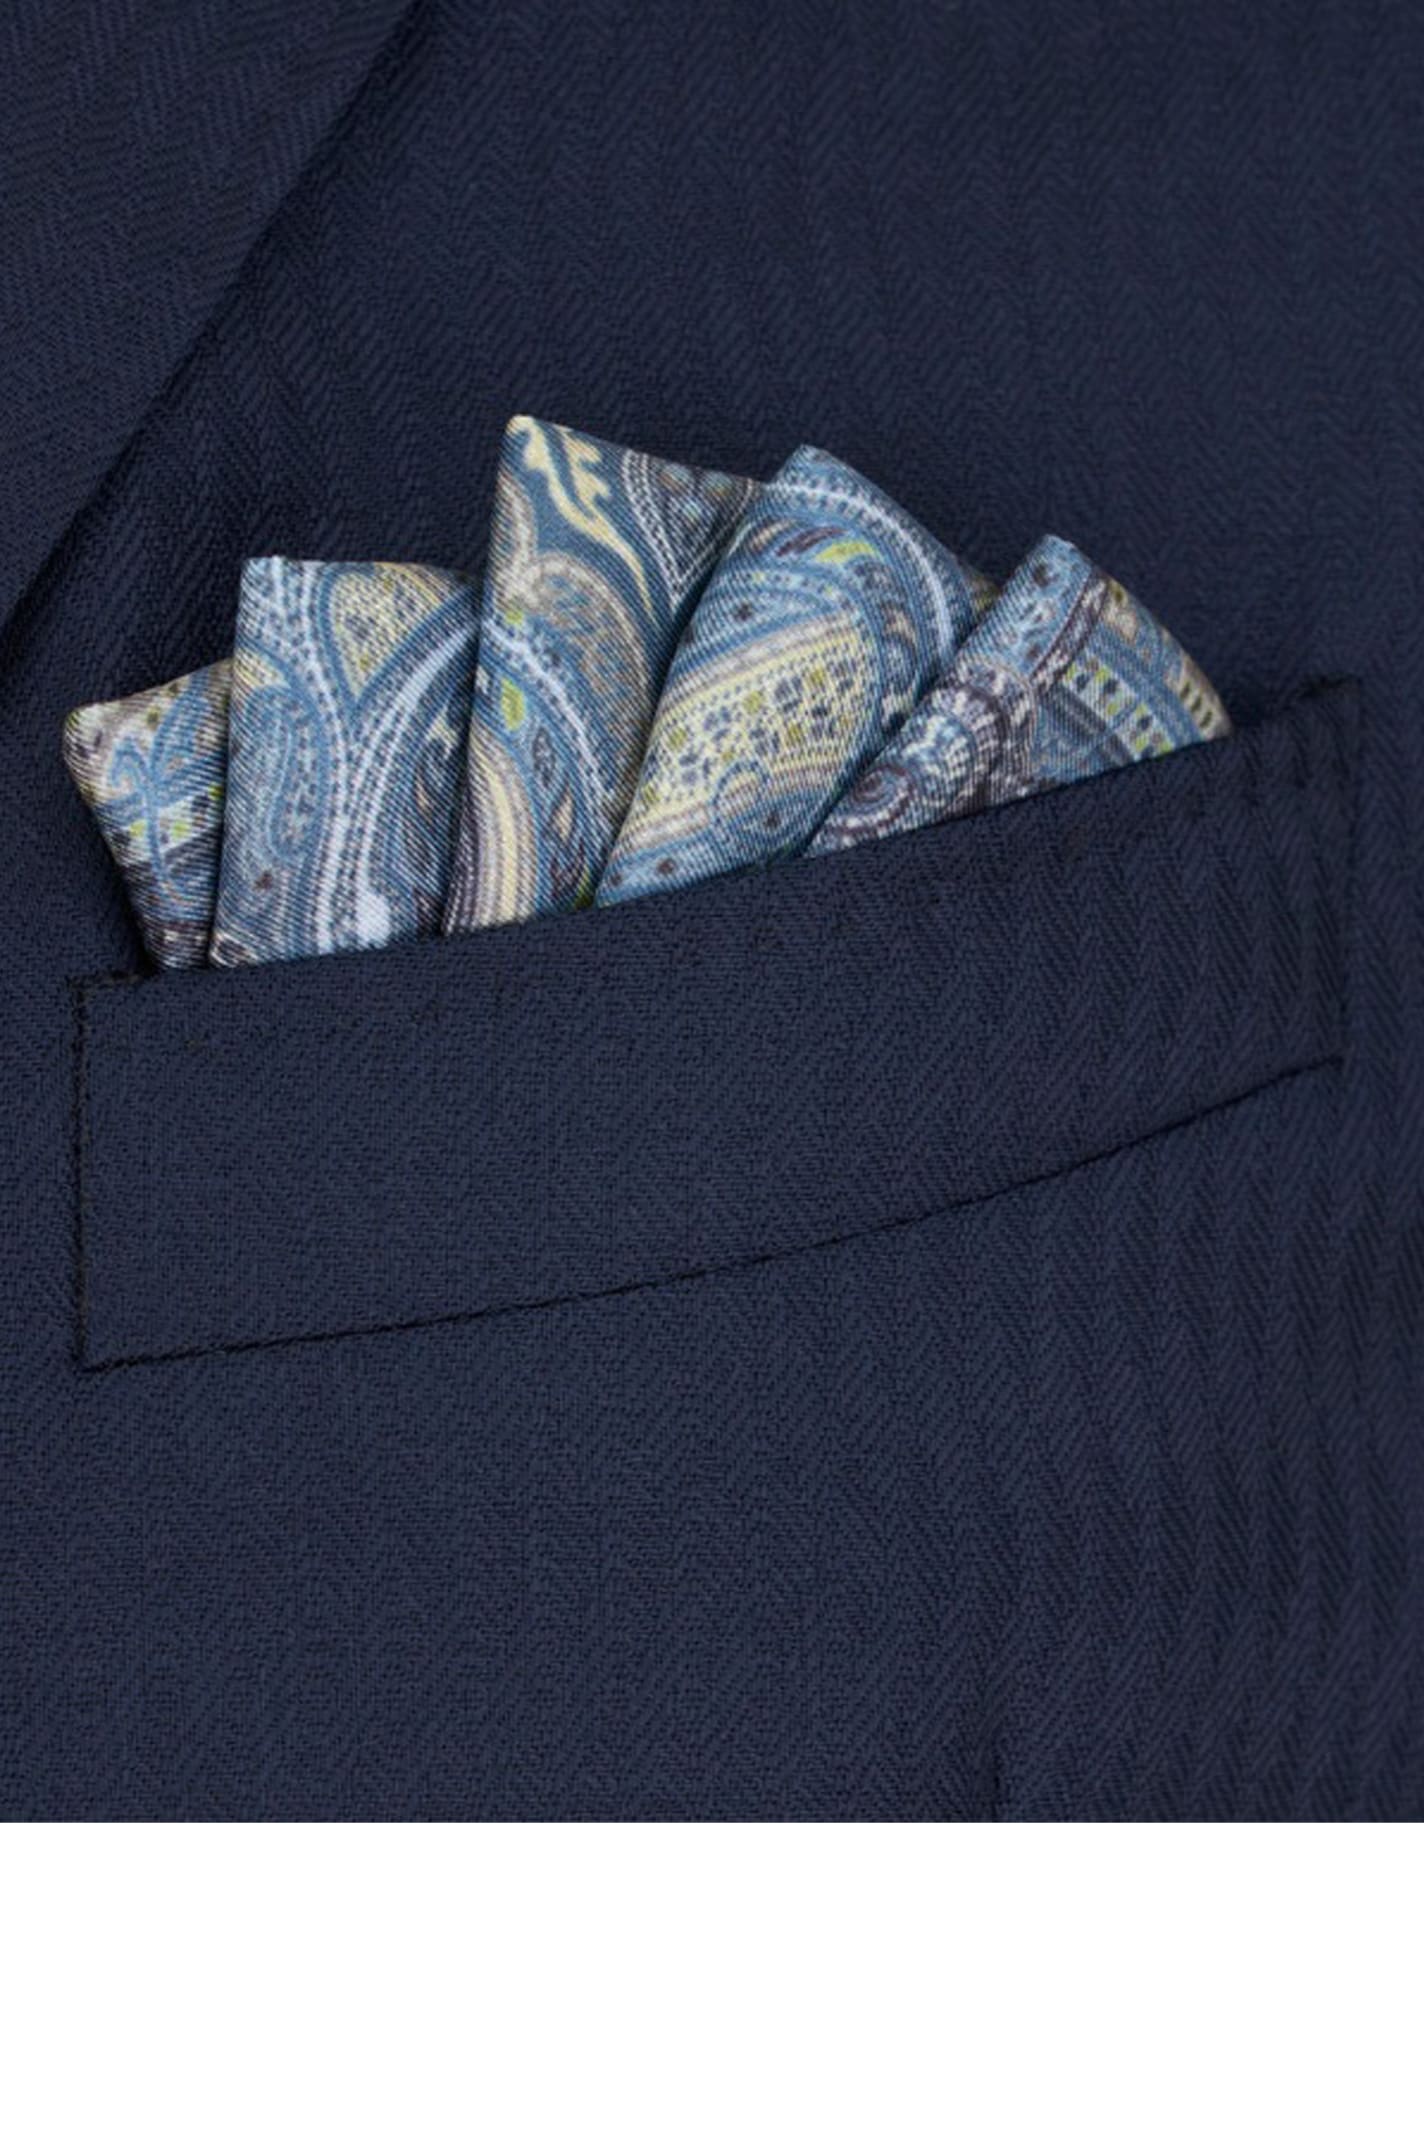 Shop Etro Handkerchief In Blue